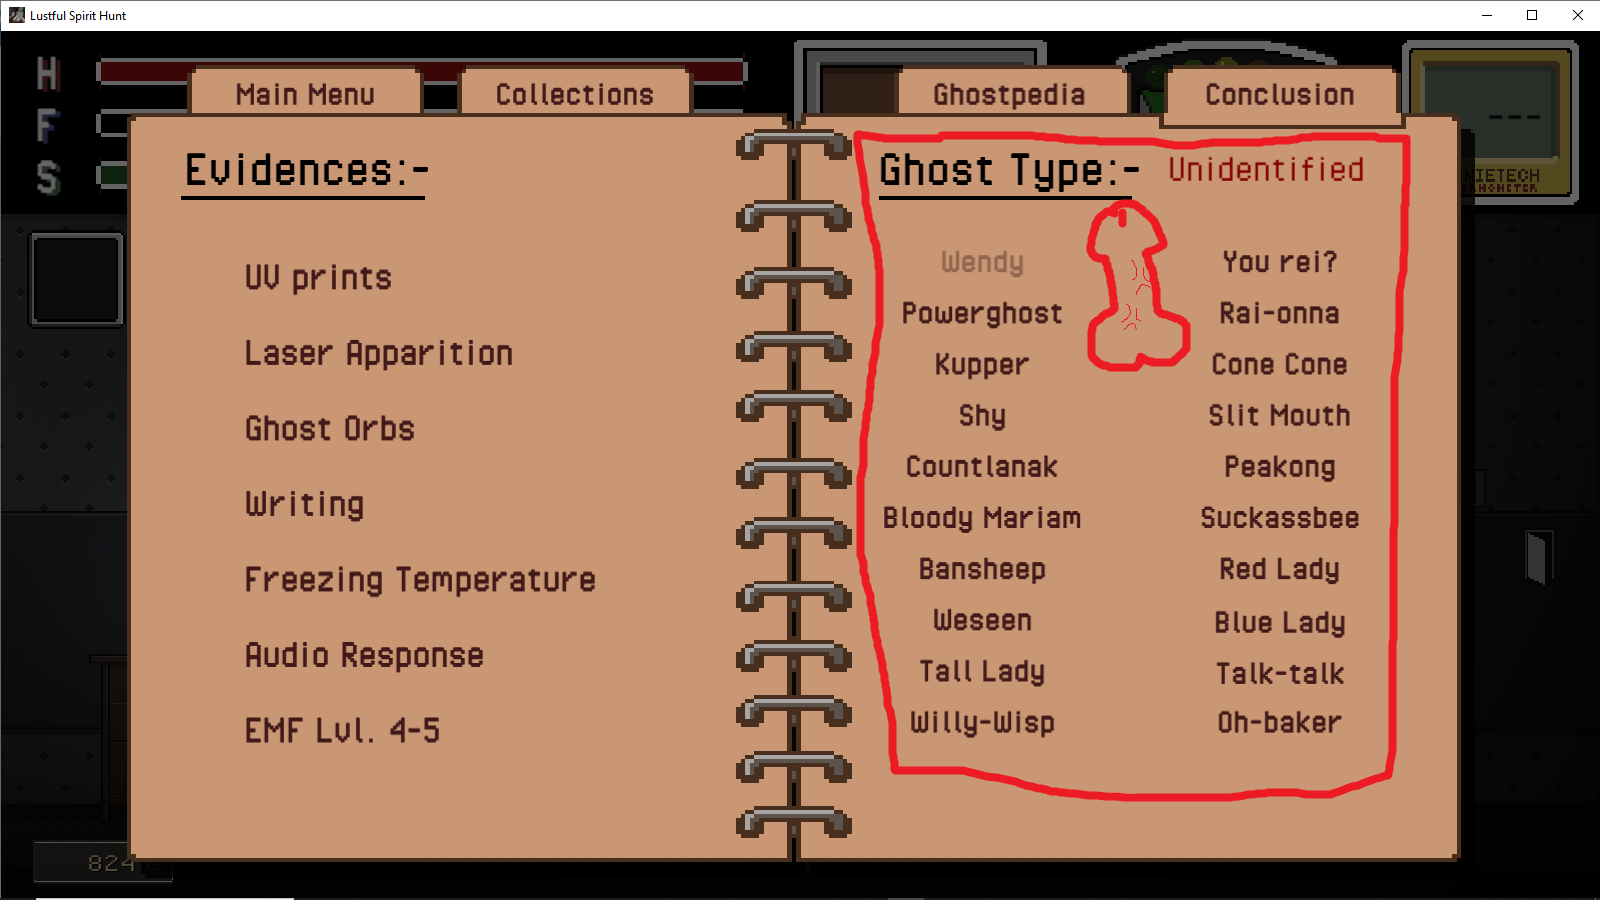 Ghost, Ghostpedia